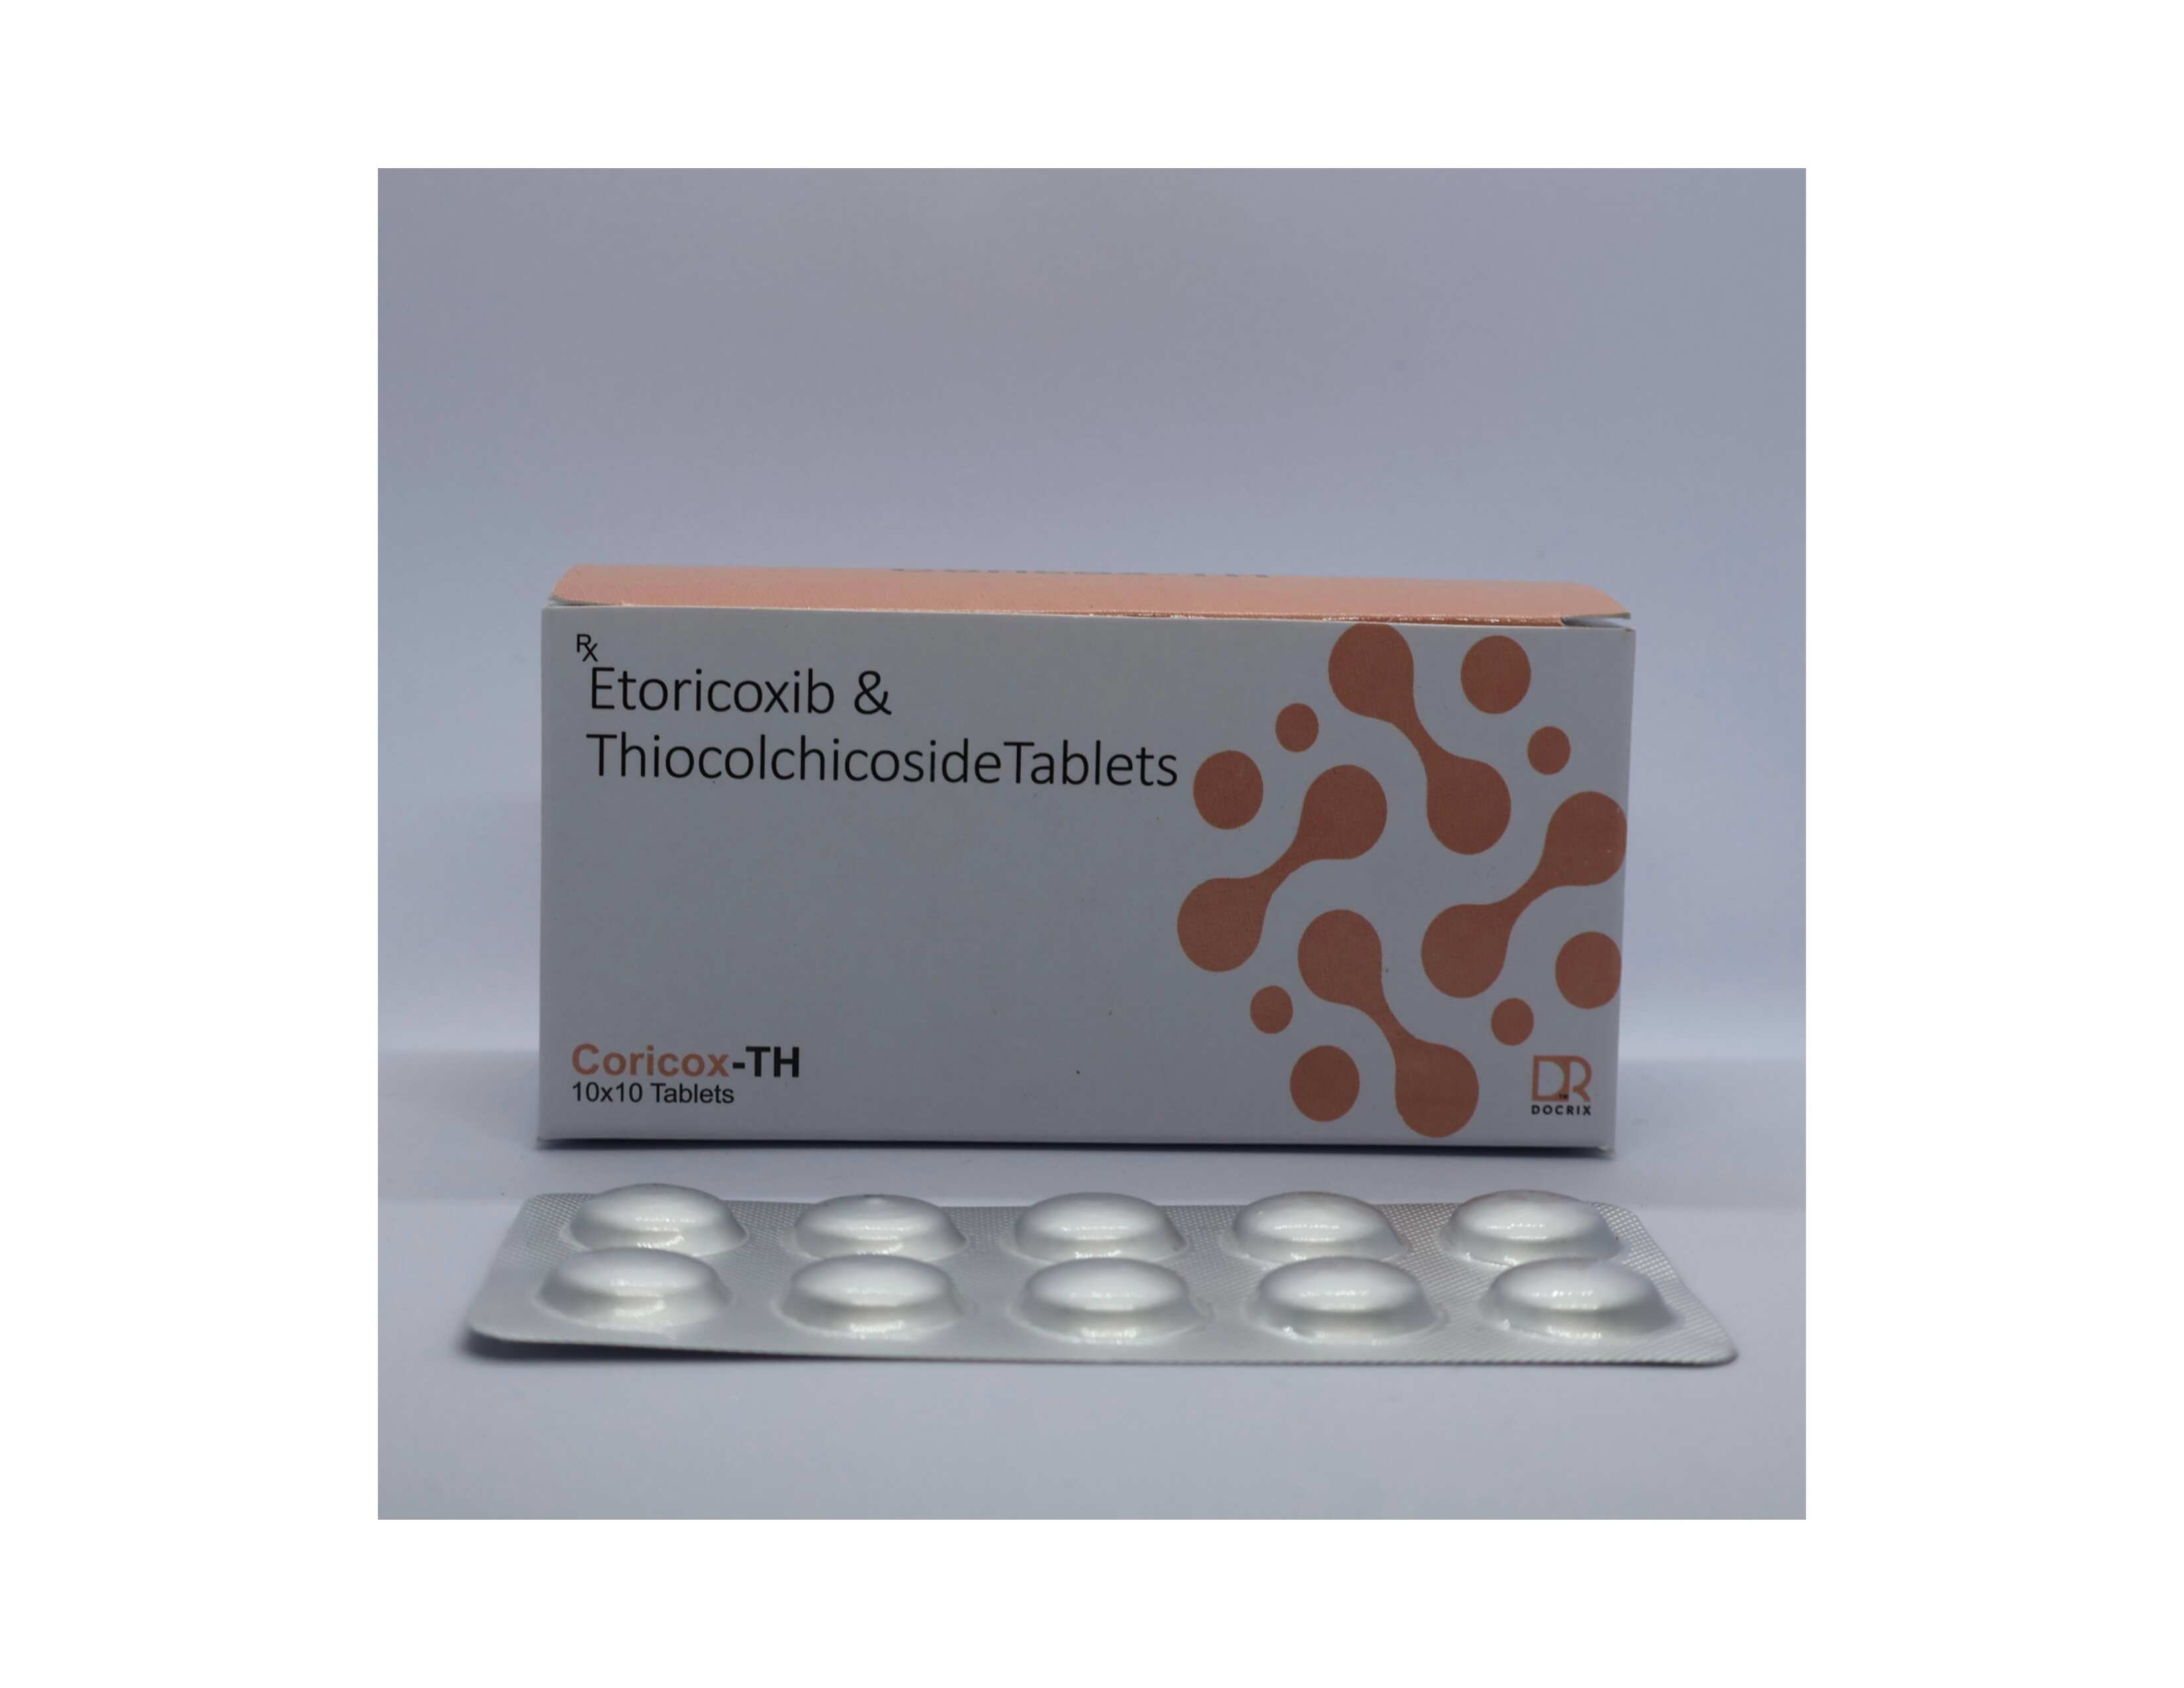 Product Name: Coricox TH, Compositions of Coricox TH are Etoricoxib & Thiocolchicoside Tablets - Docrix Healthcare